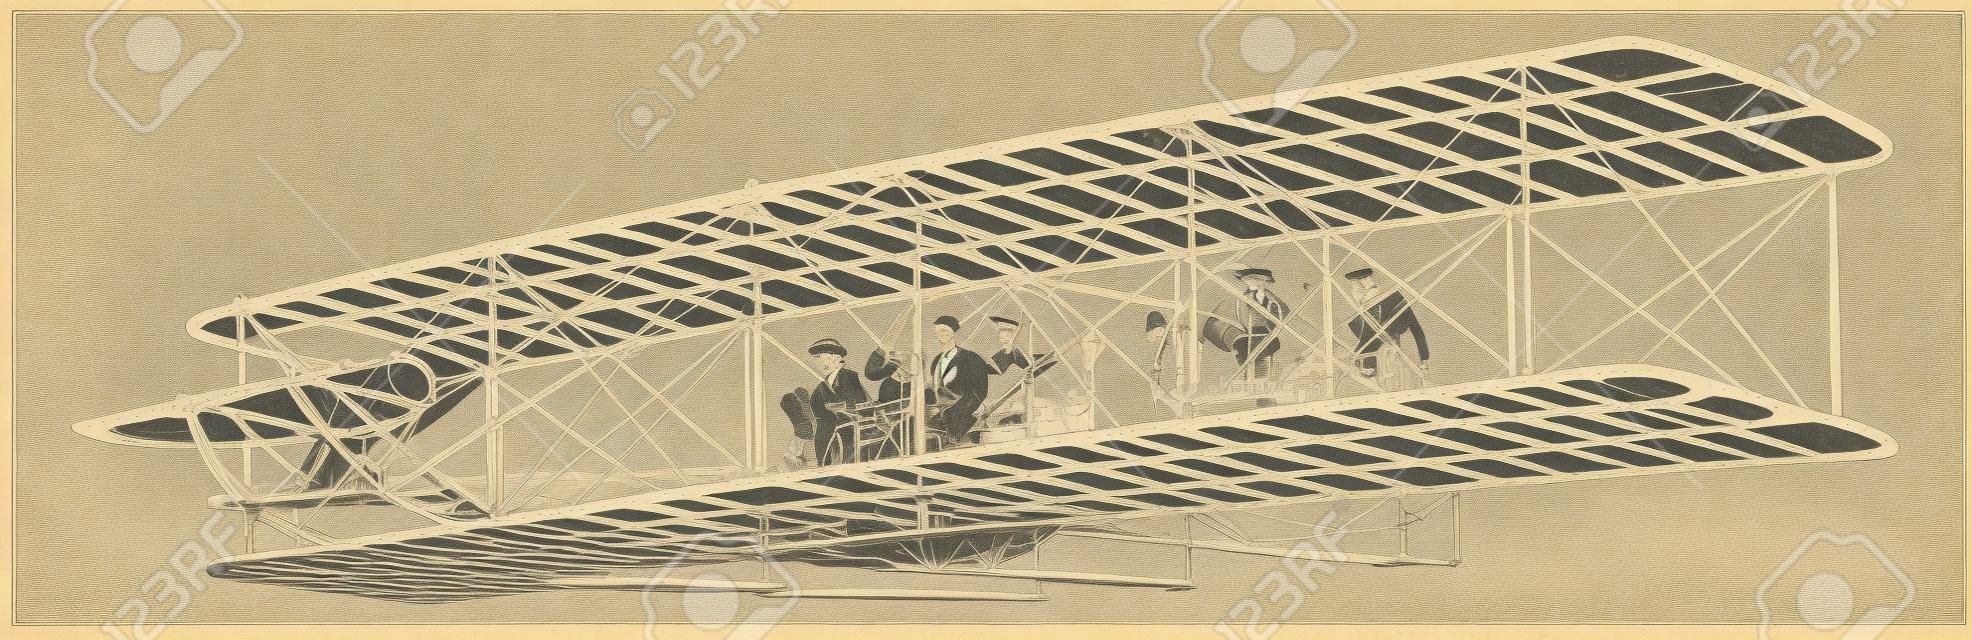 Wright Brothers Airplane esperimento di volo di maggior successo che nel 1908 ha realizzato molte ascensioni di successo, disegno di linee vintage o illustrazione di incisione.